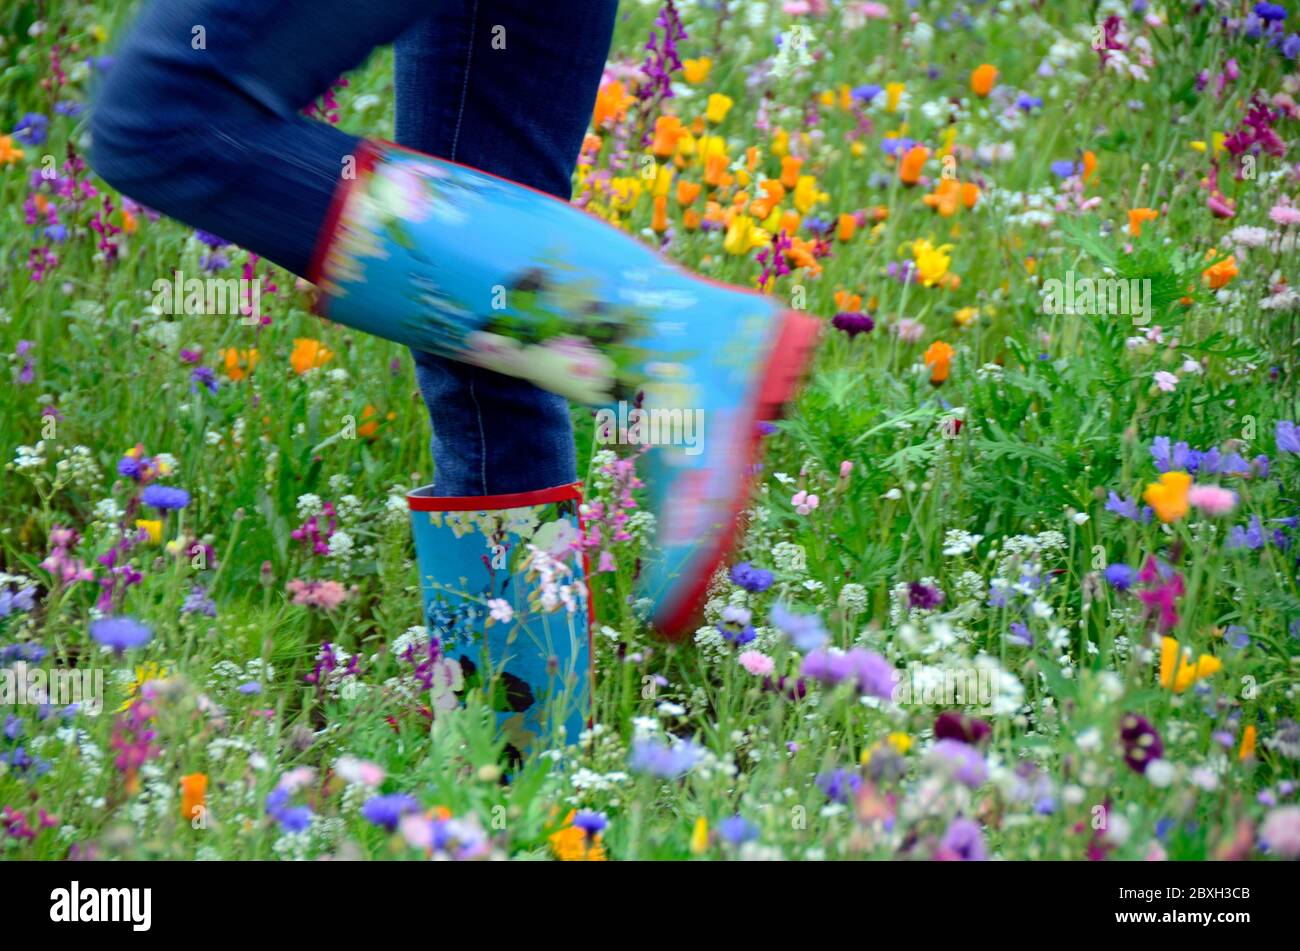 Ich und meine Gummistiefel in einem Blumenfeld Stockfotografie - Alamy